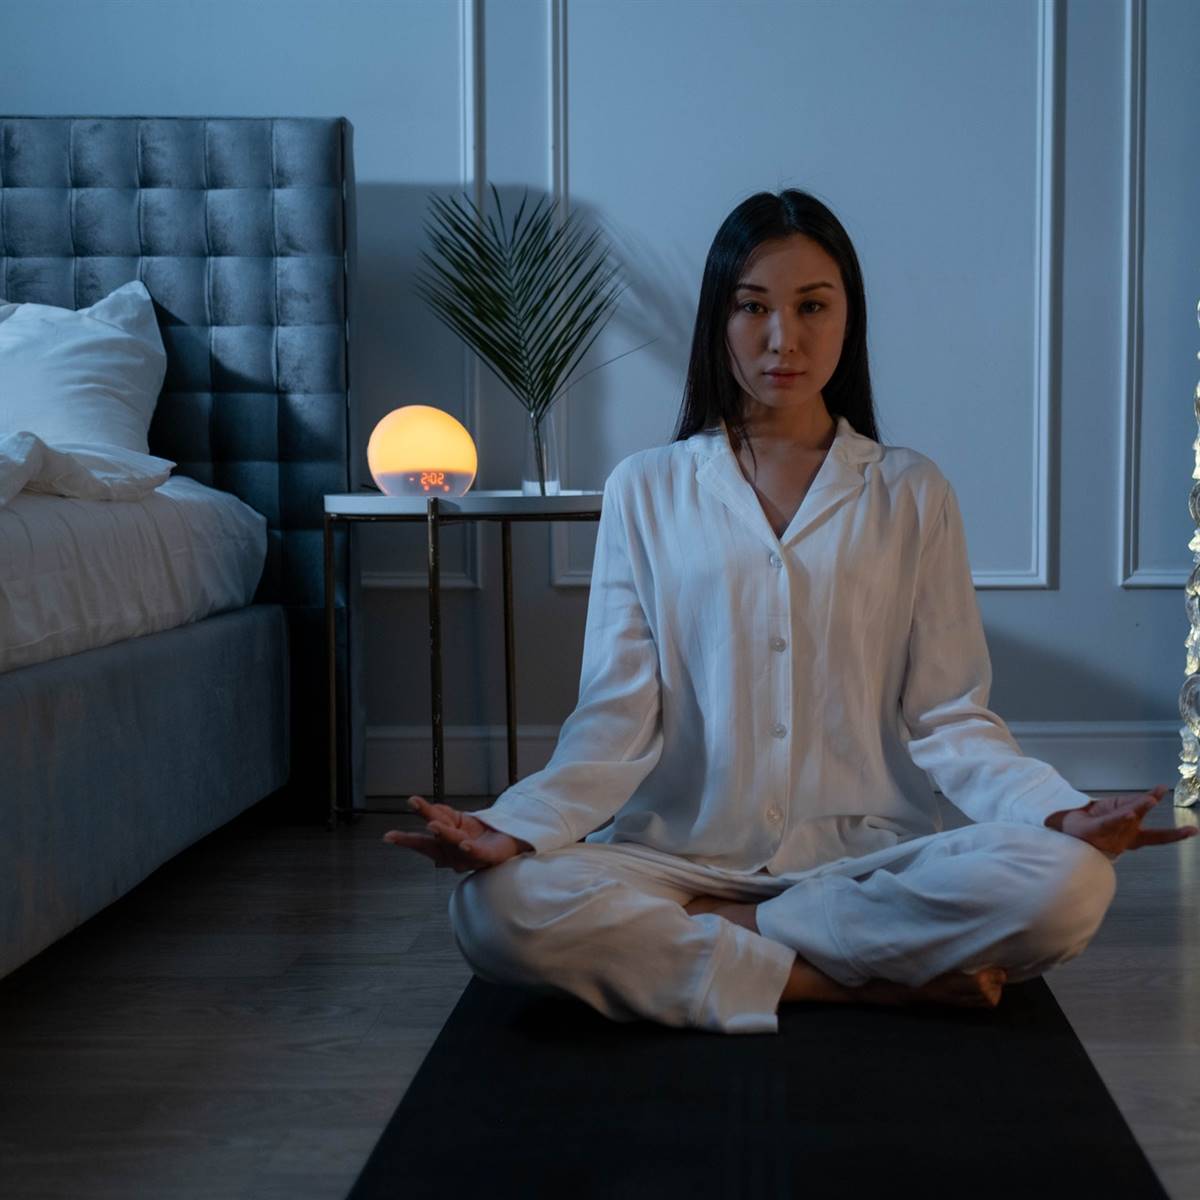 Mujer asiática en la posición del loto en un dormitorio oscuro